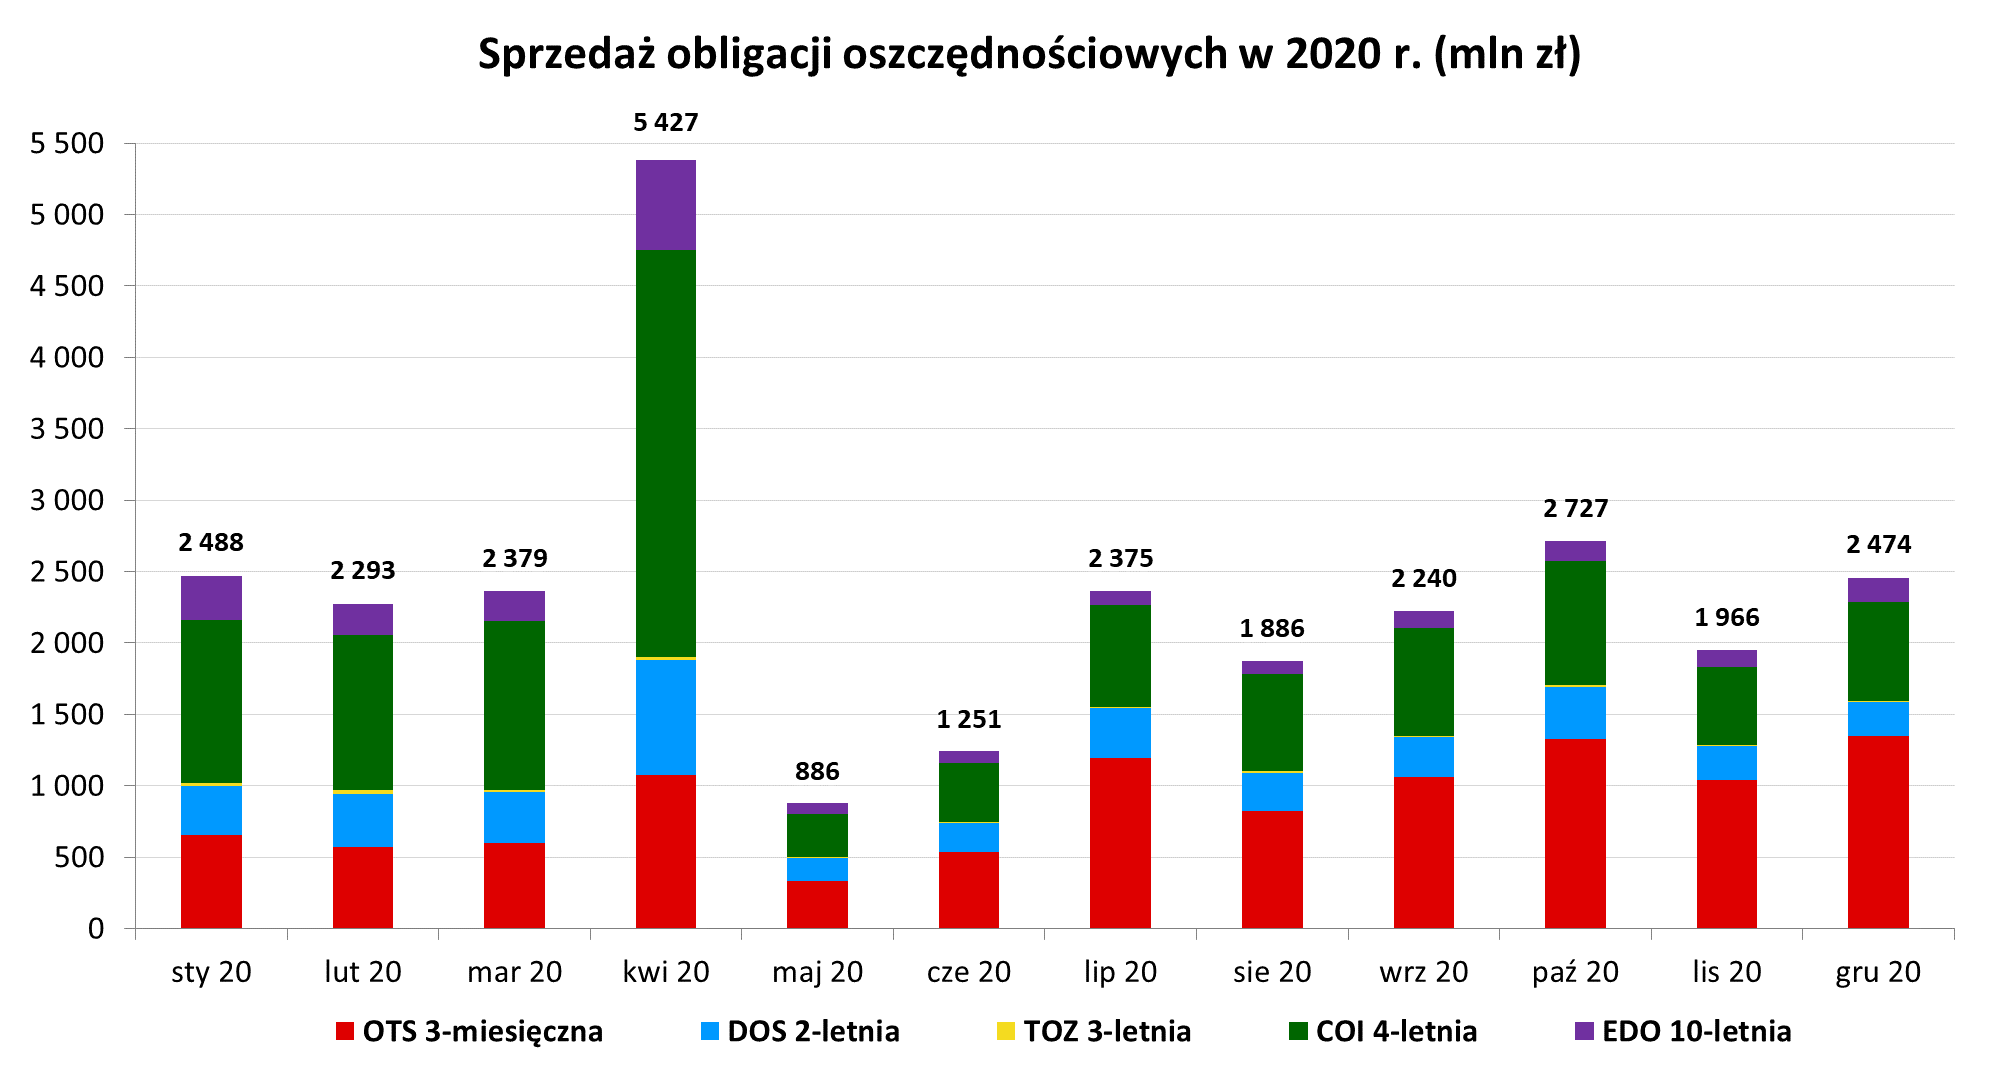 Wykres słupkowy przedstawiający sprzedaż obligacji oszczędnościowych w 2020 r. (mln zł)